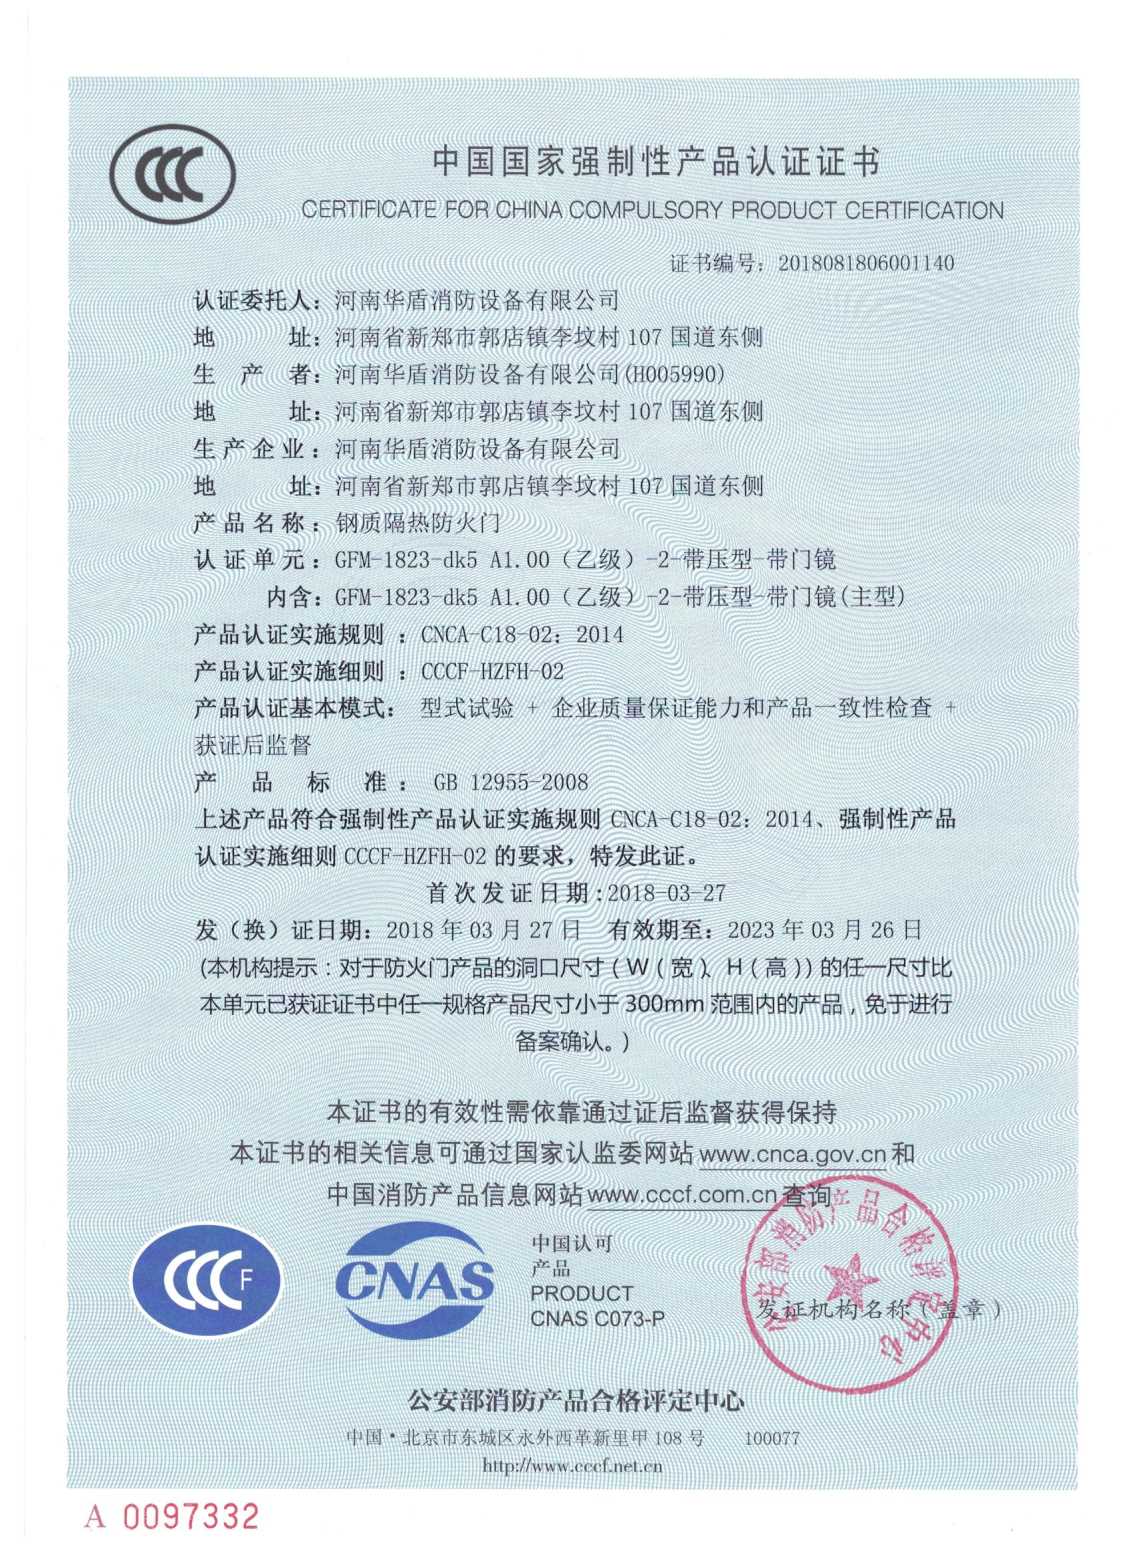 郑州GFM-1823-dk5A1.00(乙级）-2-3C证书